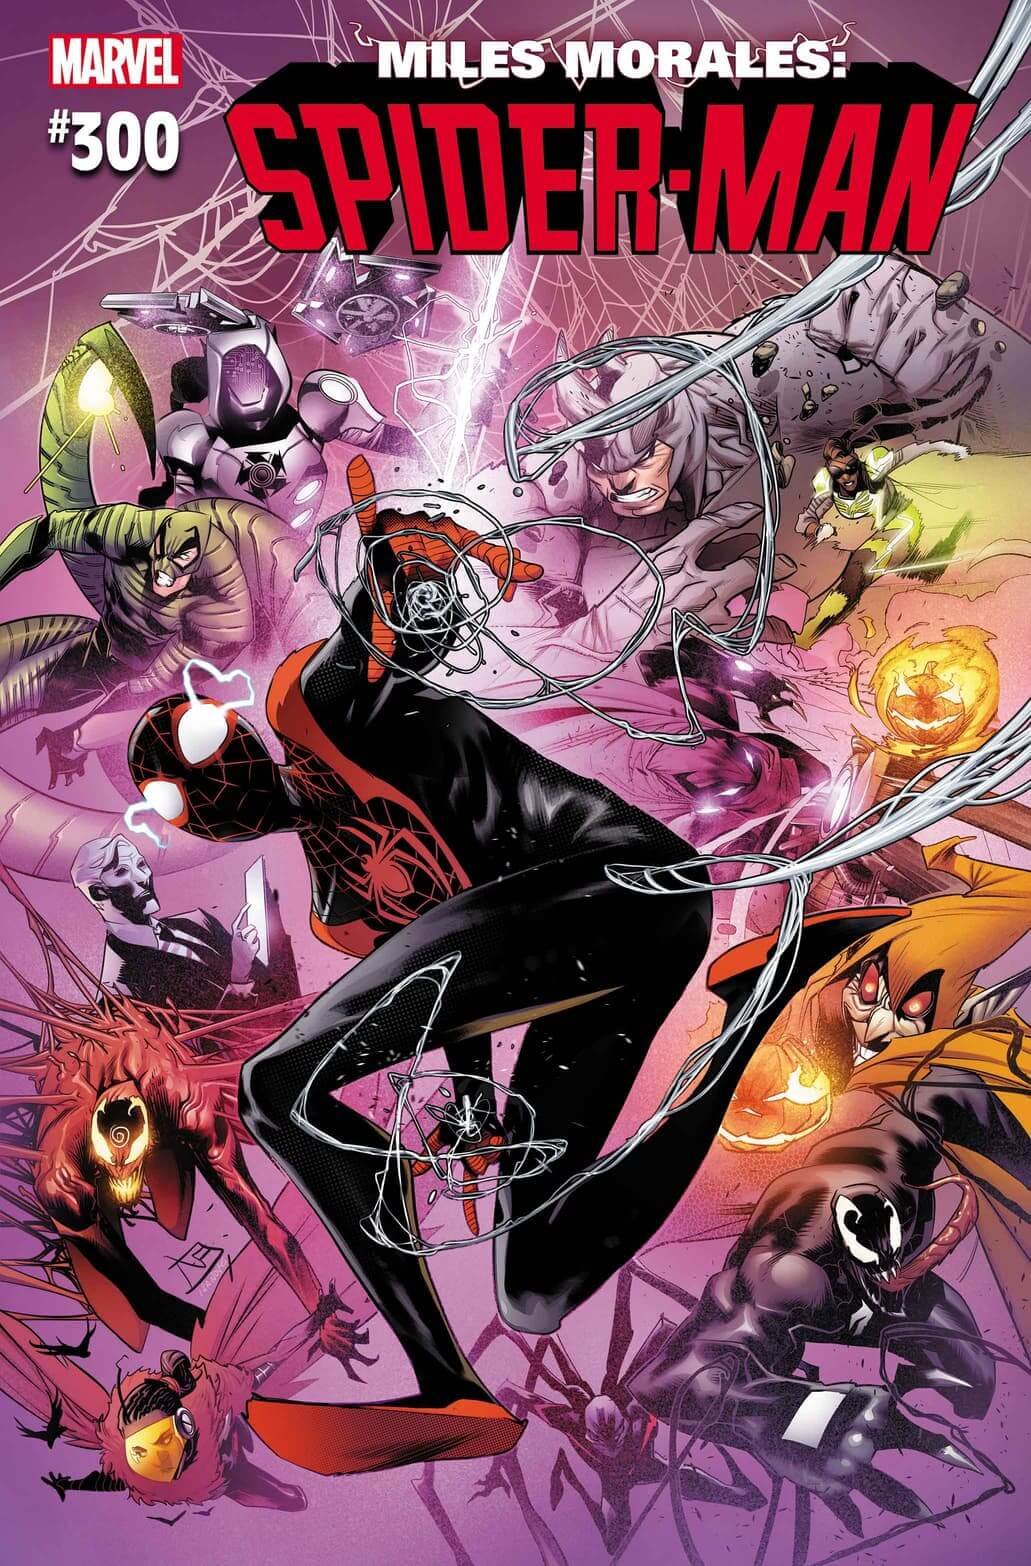 Cover di Miles Morales Spider-Man 18, #300 secondo la numerazione Legacy, di Federico Vicentini